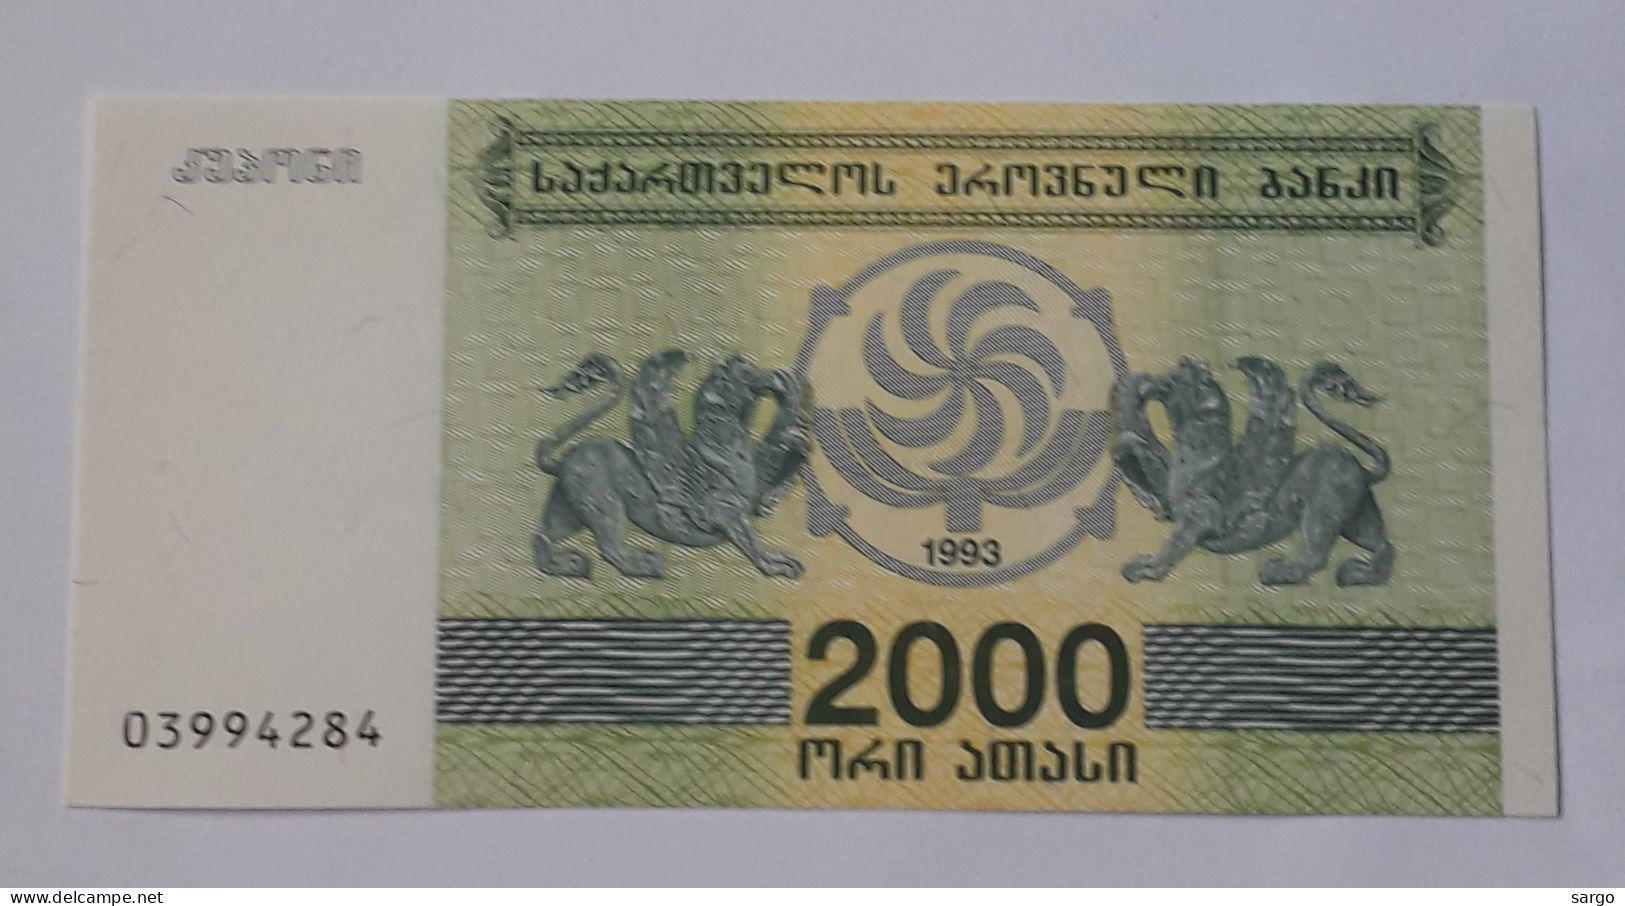 GEORGIA - 2.000 LARIS - 1993  - P 44 - UNC - BANKNOTES - PAPER MONEY - CARTAMONETA - - Georgië